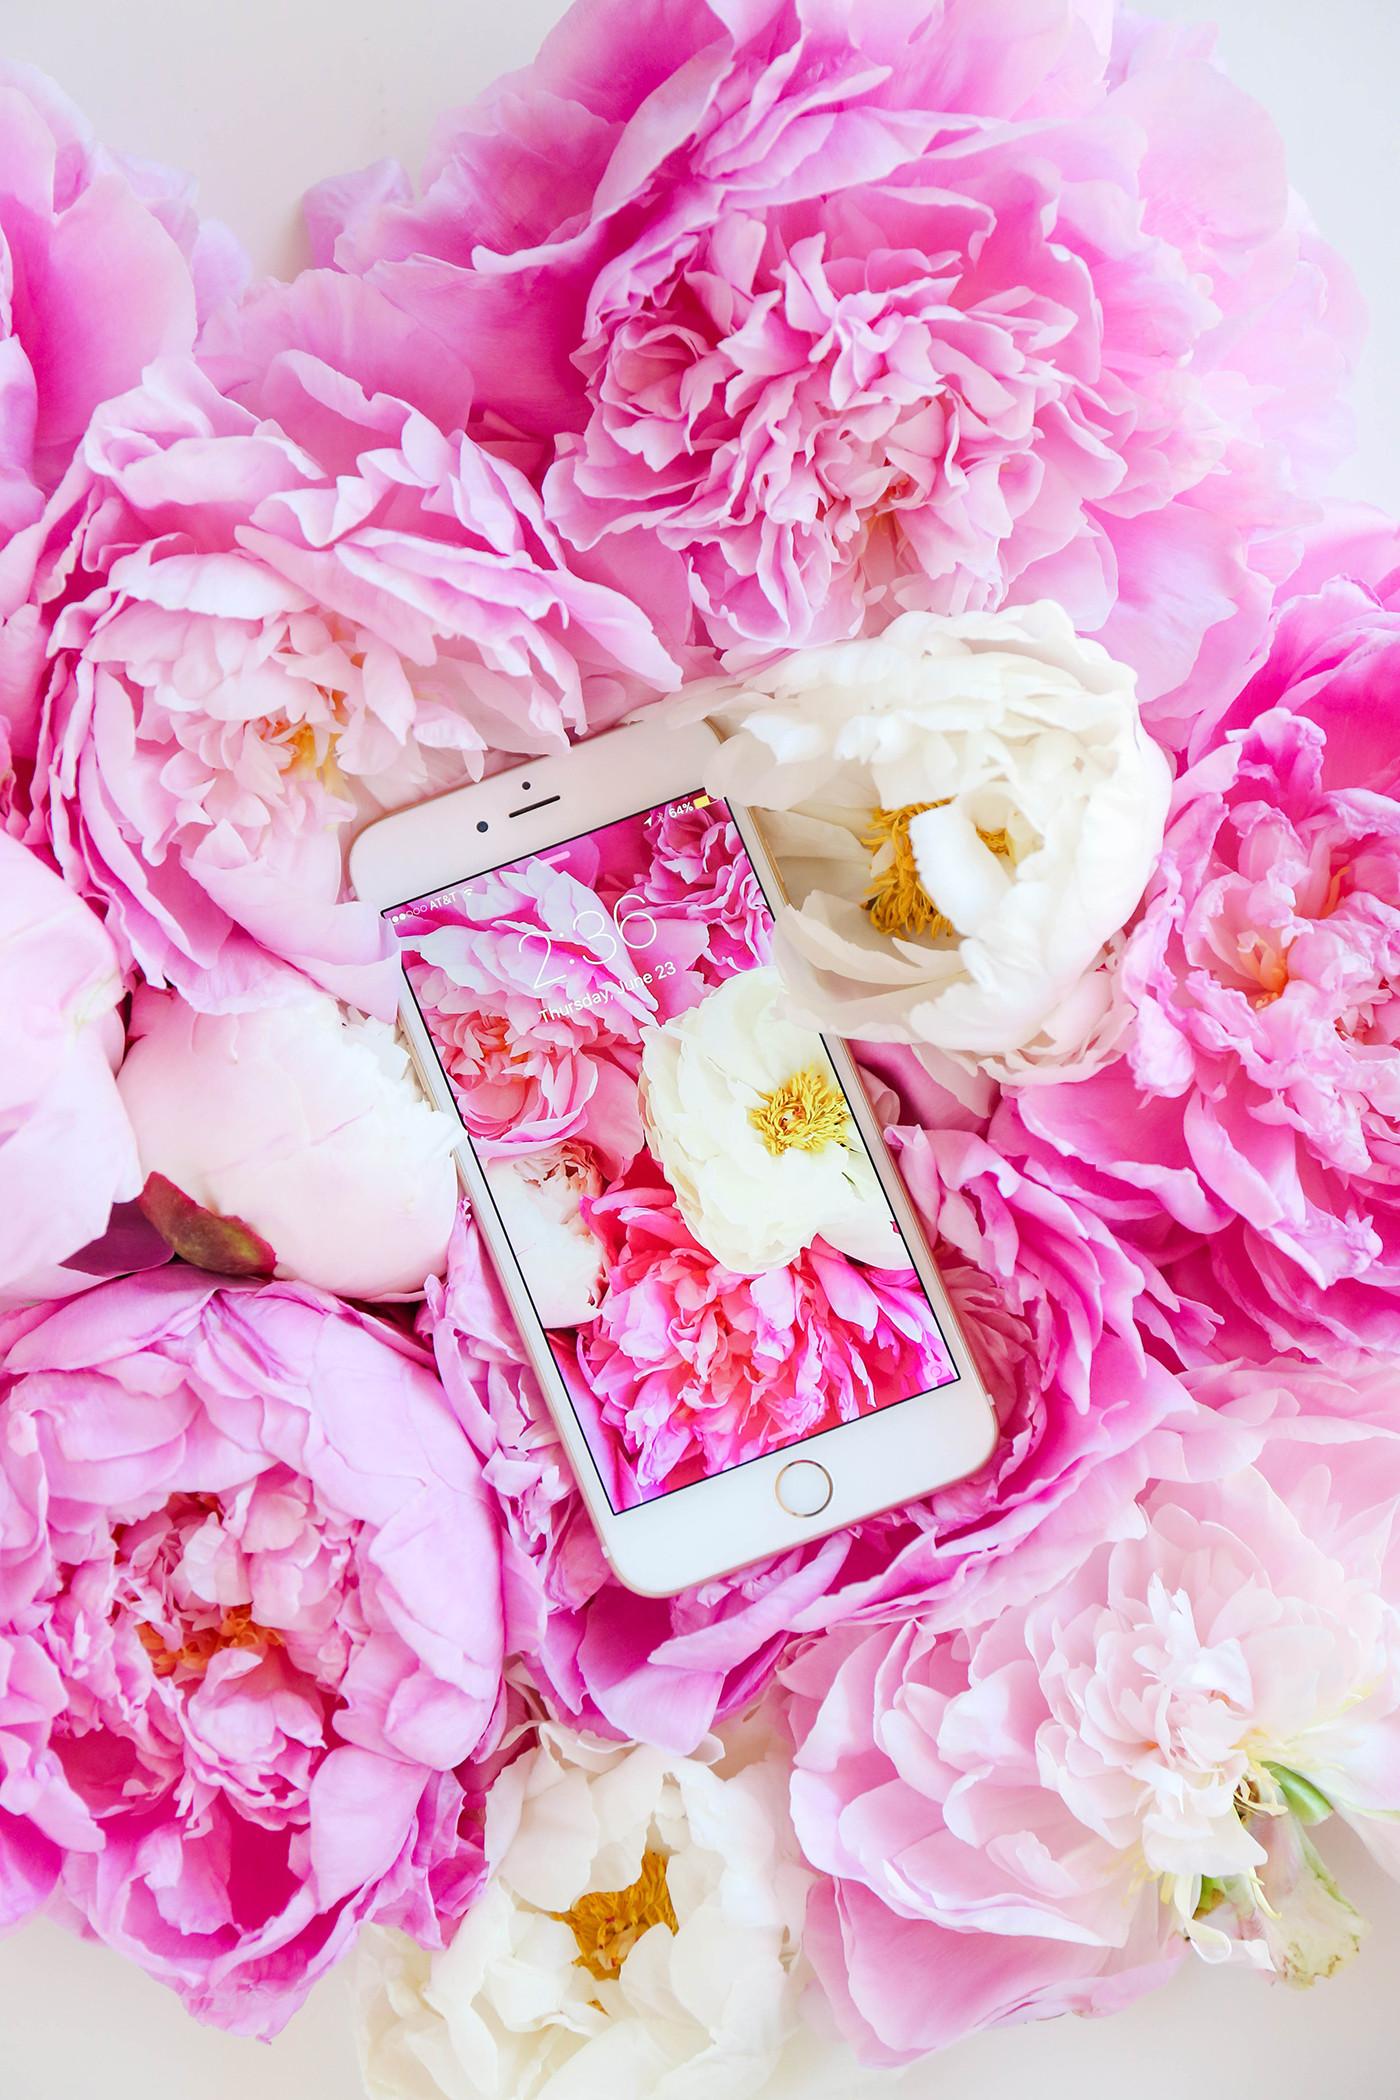 Pink Peonies Wallpaper - Peonies Wallpaper Iphone 6 , HD Wallpaper & Backgrounds